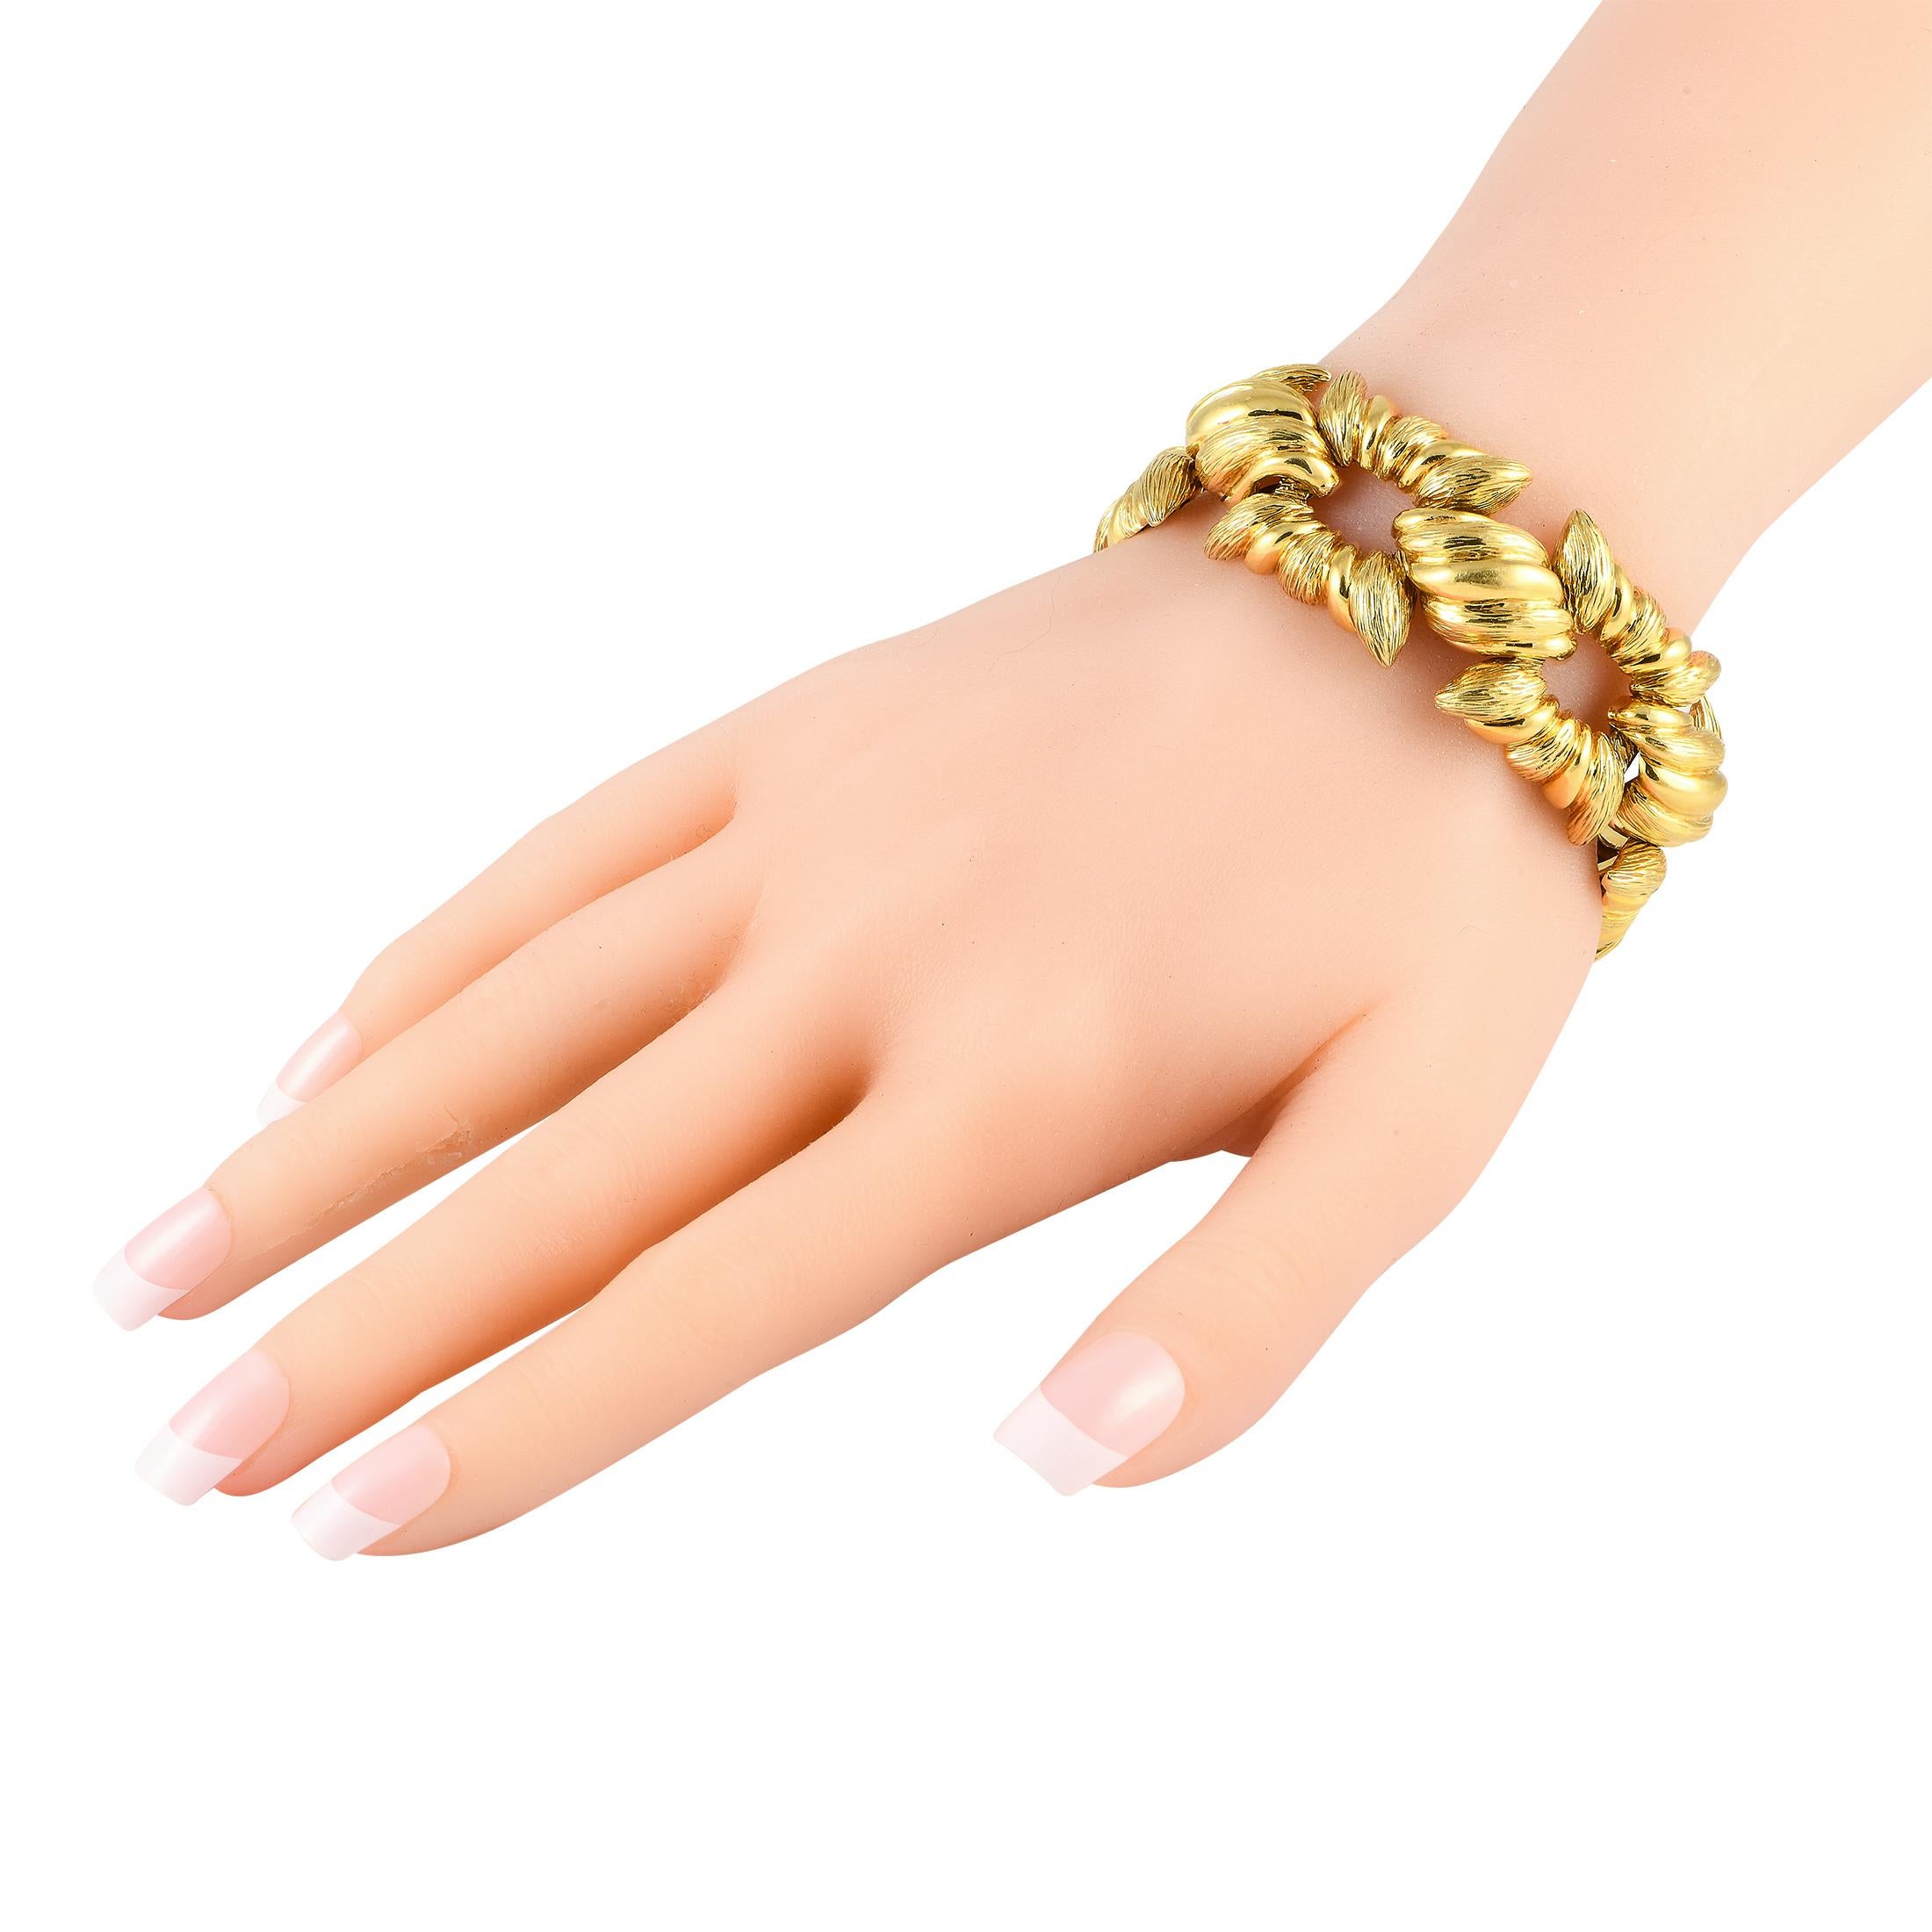 Ce bracelet en or jaune est un accessoire facile à porter qui peut instantanément ajouter de la dimension et de la texture à votre style d'accessoirisation. Le bracelet présente des maillons rigides et cannelés de forme carrée, reliés par des